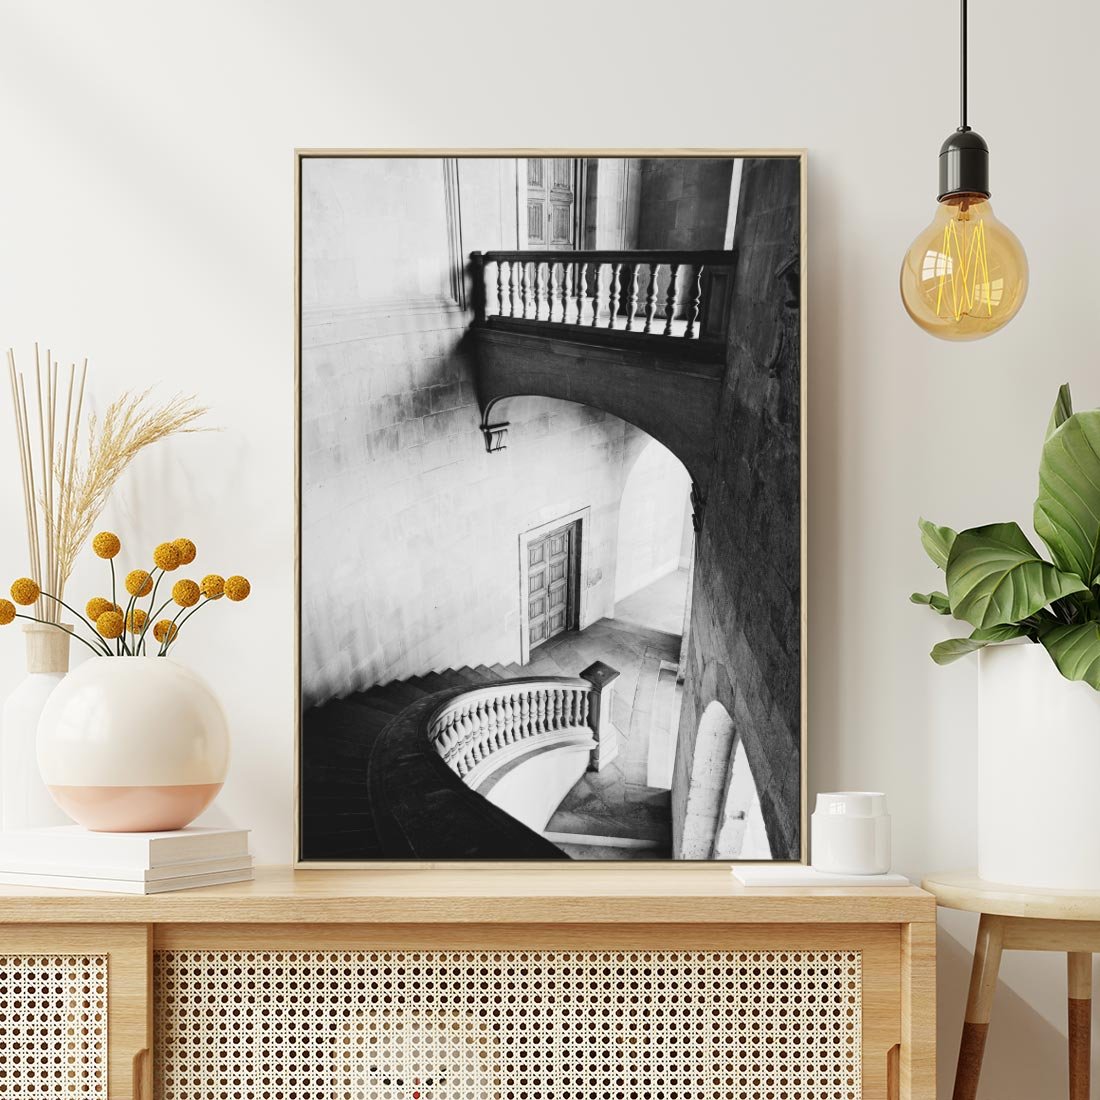 Obraz w ramie 50x70 - Po Schodach w Dół - czarno białą fotgrafia, zakręcone schody w starek kamienicy - rama drewno